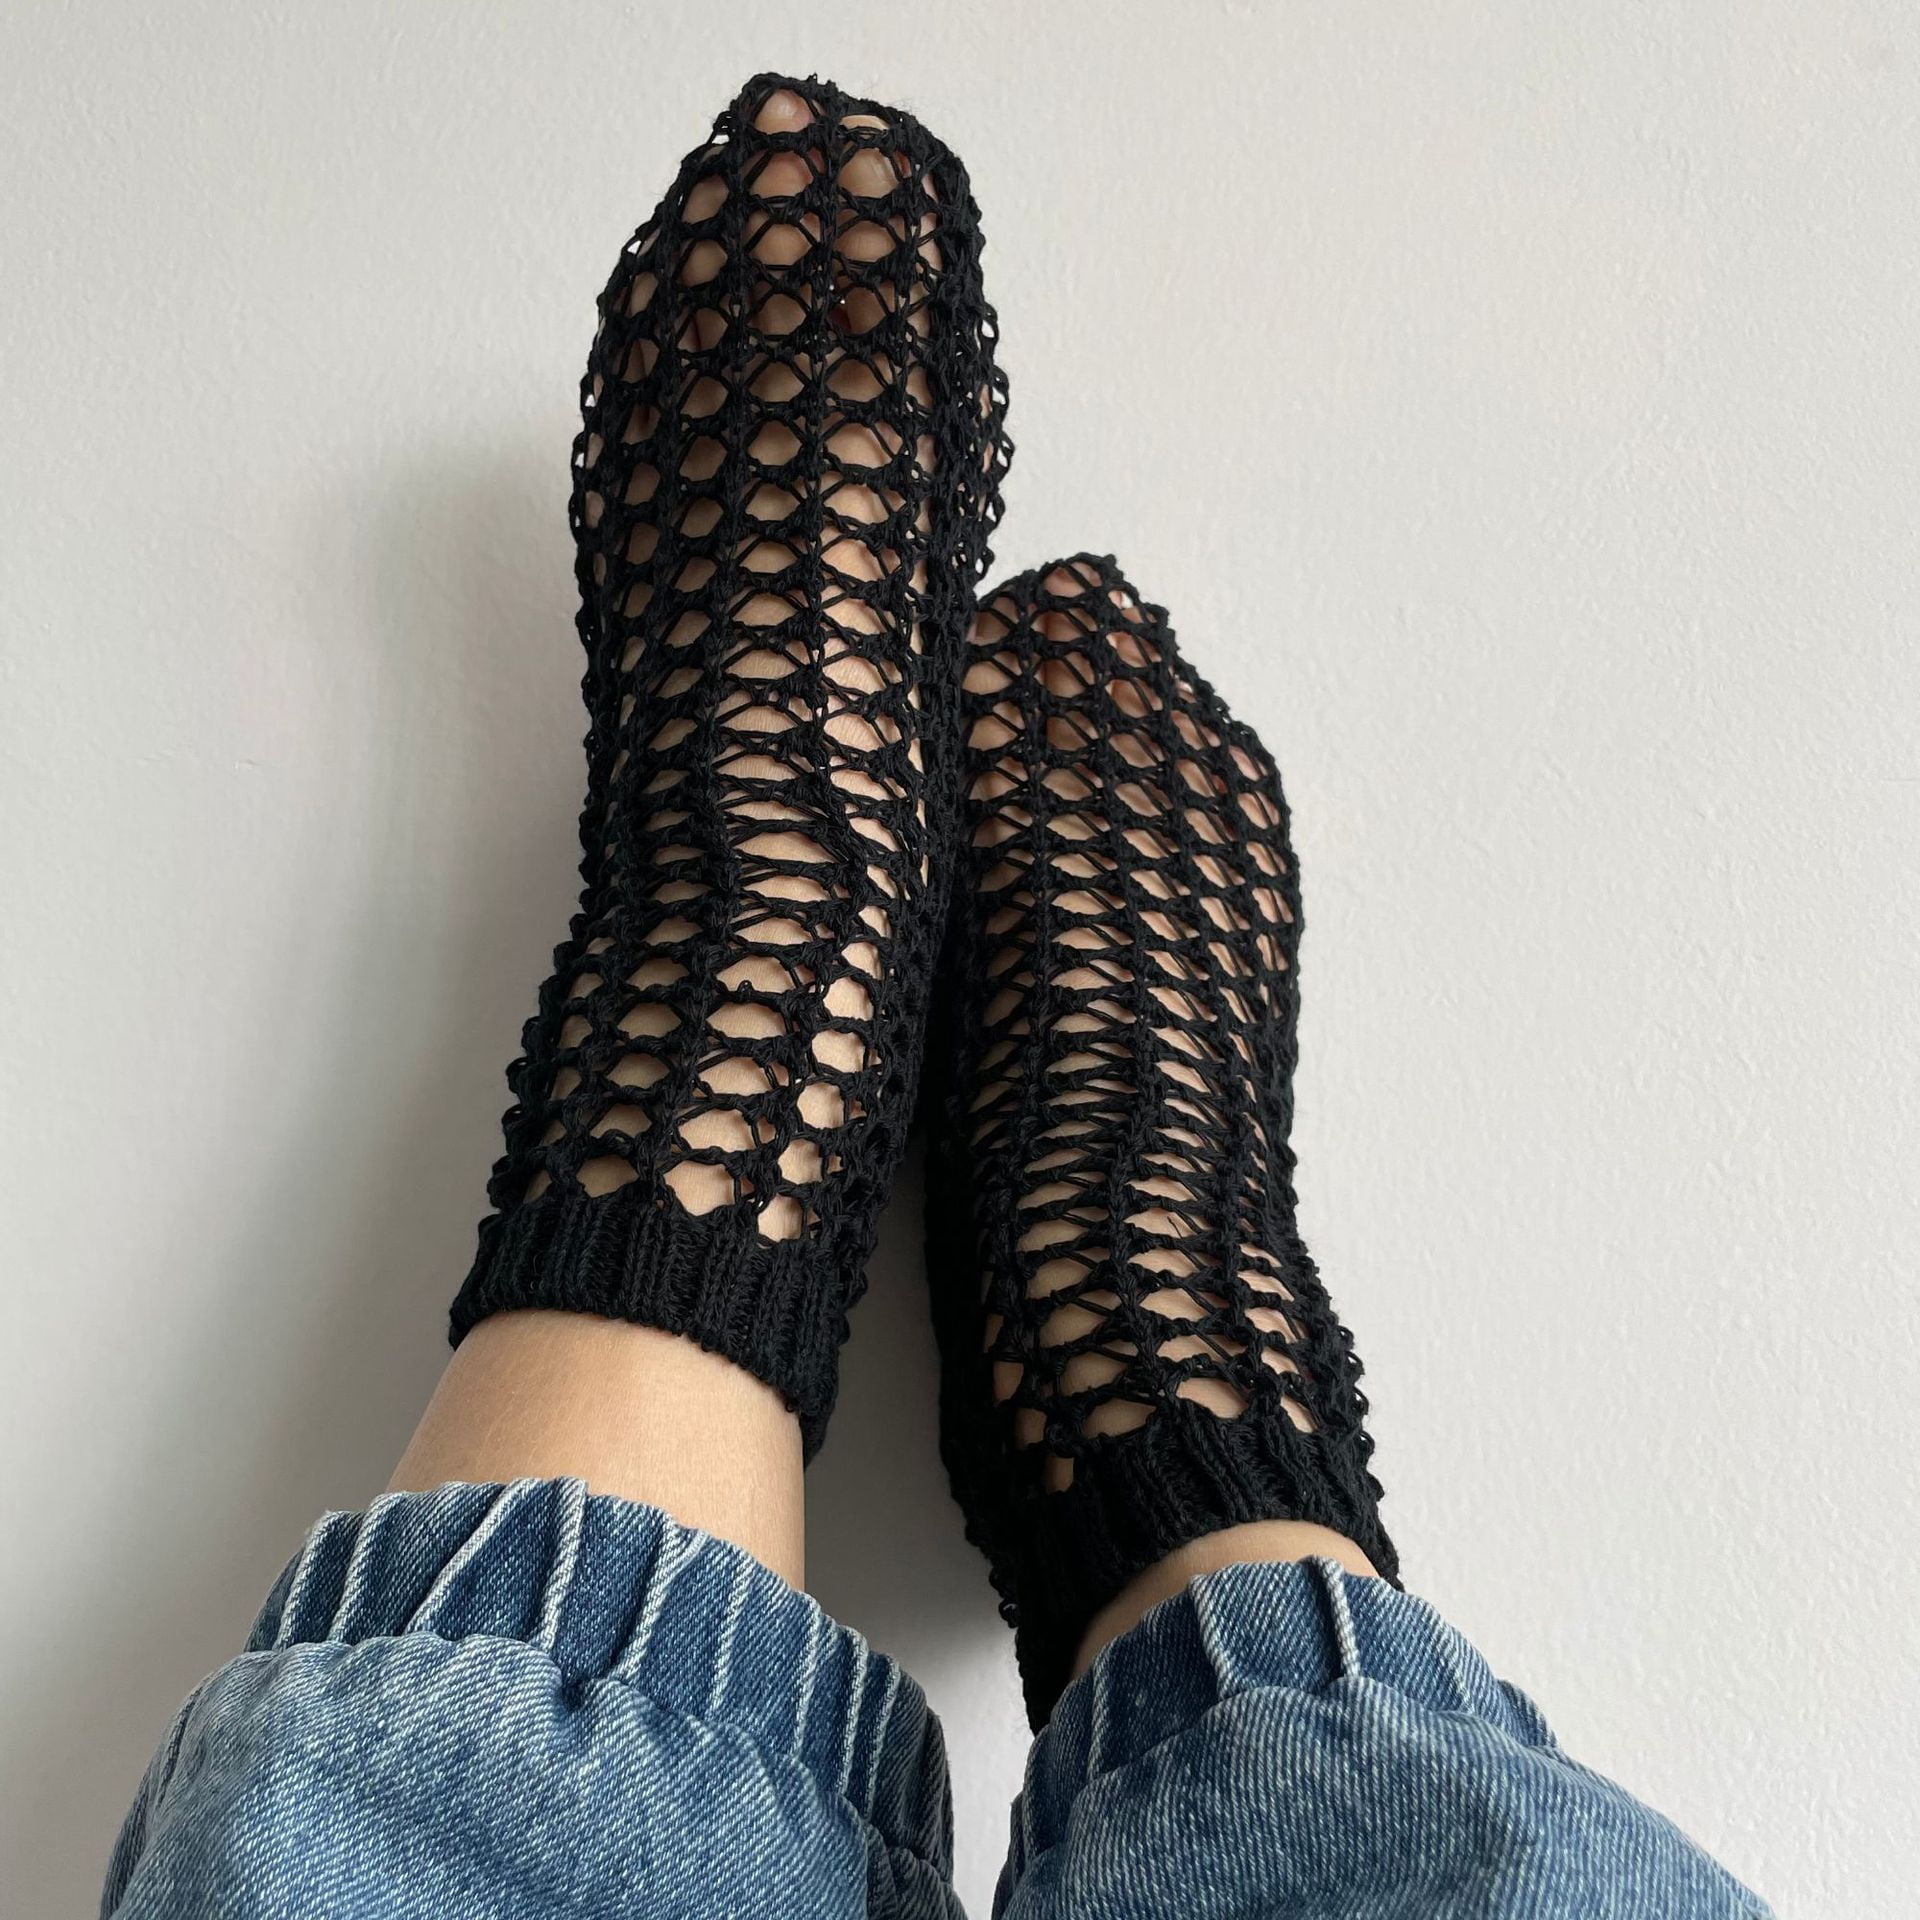 Mesh Net Socks Women's Ankle Socks Breathable Mesh Lady Girl Soft 5Pairs/set C